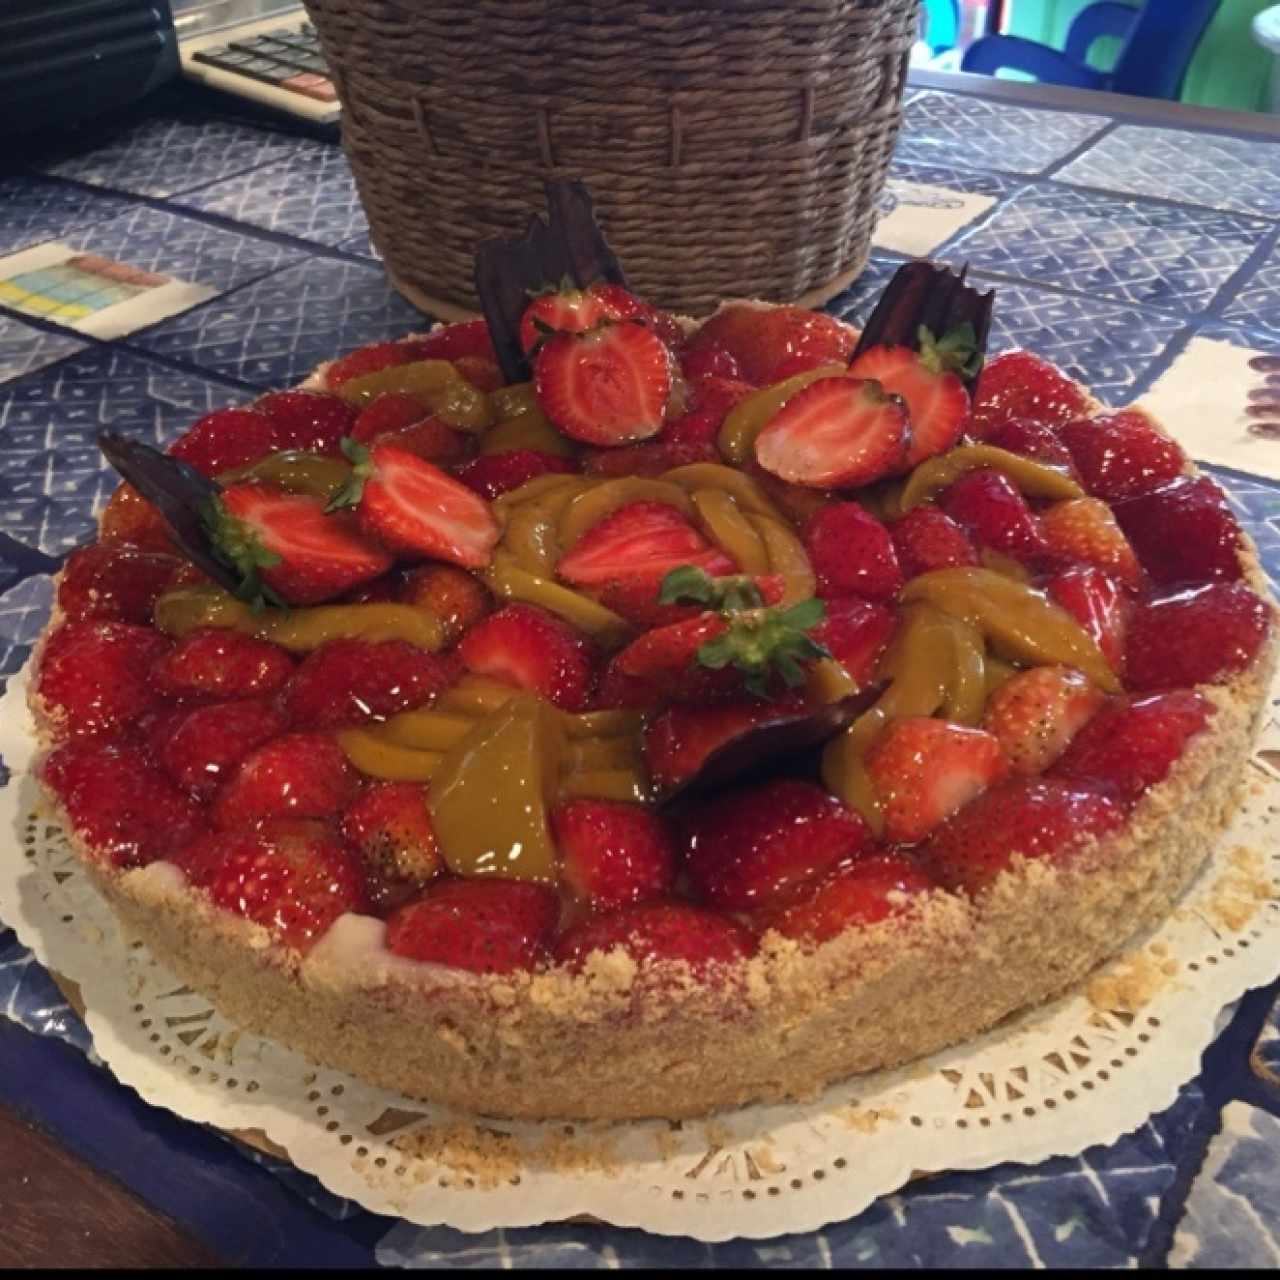 tarta de fresa y melocoton, una delicia la mejor sin duda alguna!!!